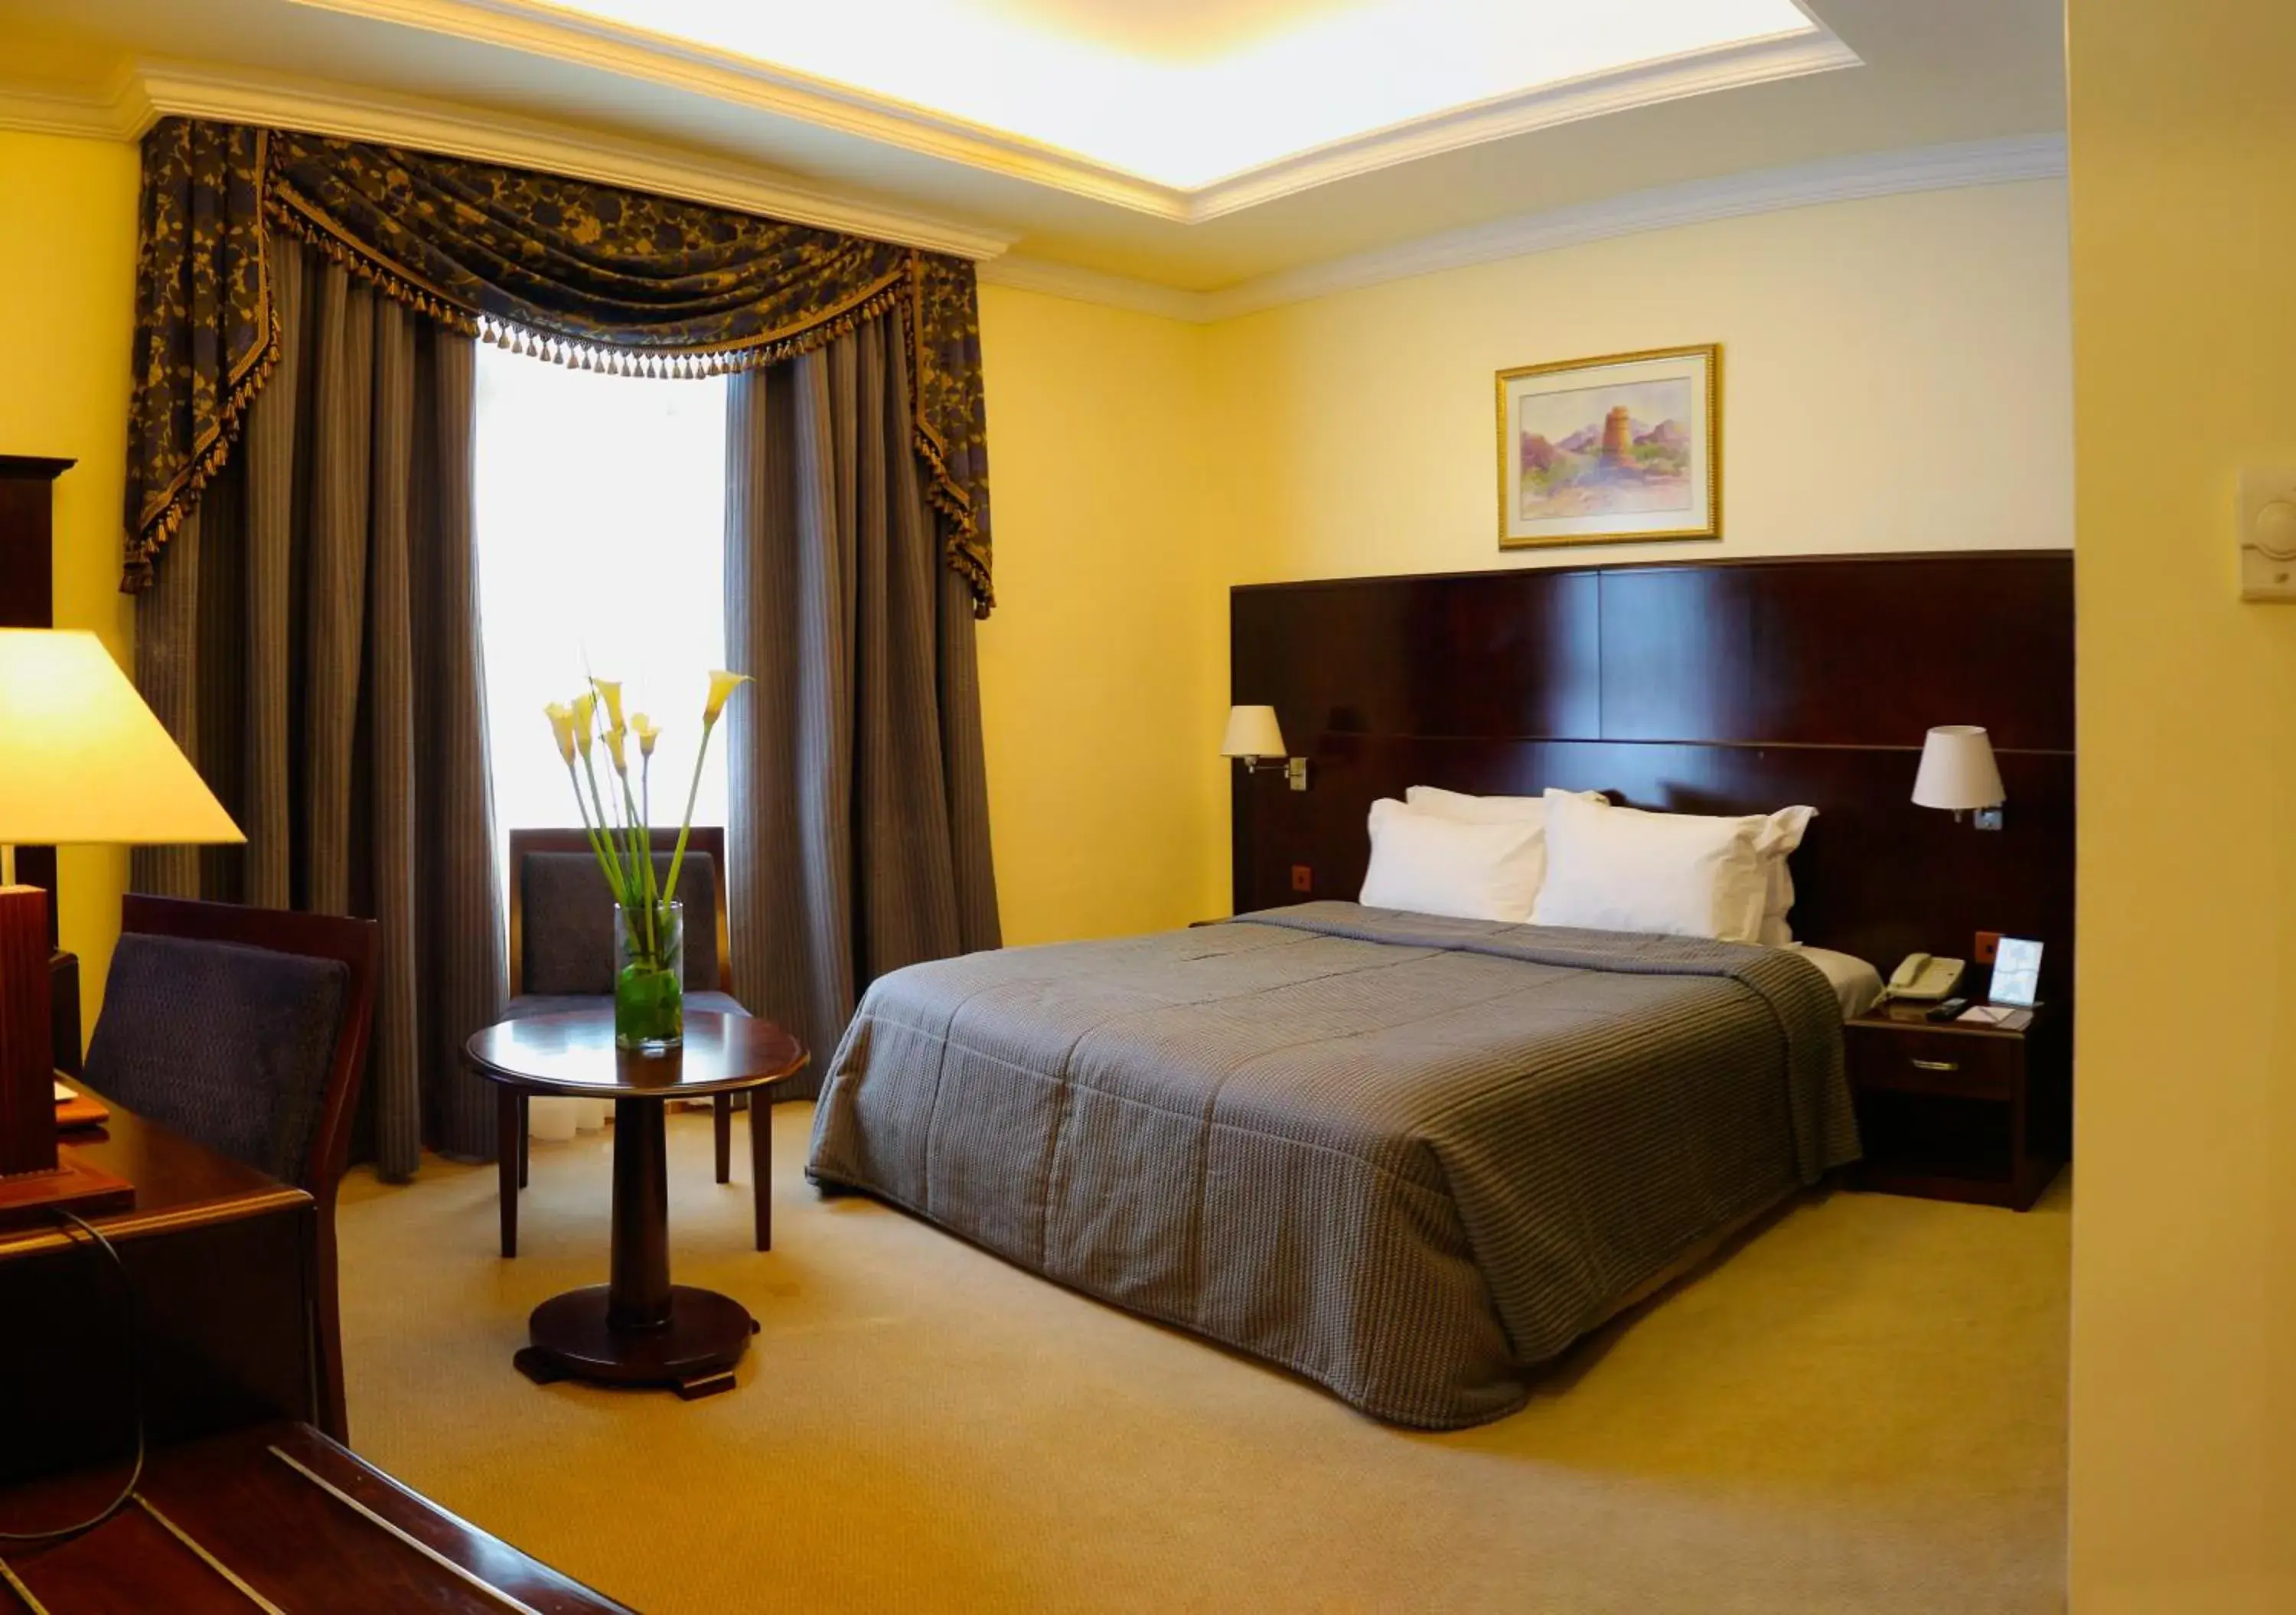 Bedroom, Room Photo in Sharjah Premiere Hotel & Resort